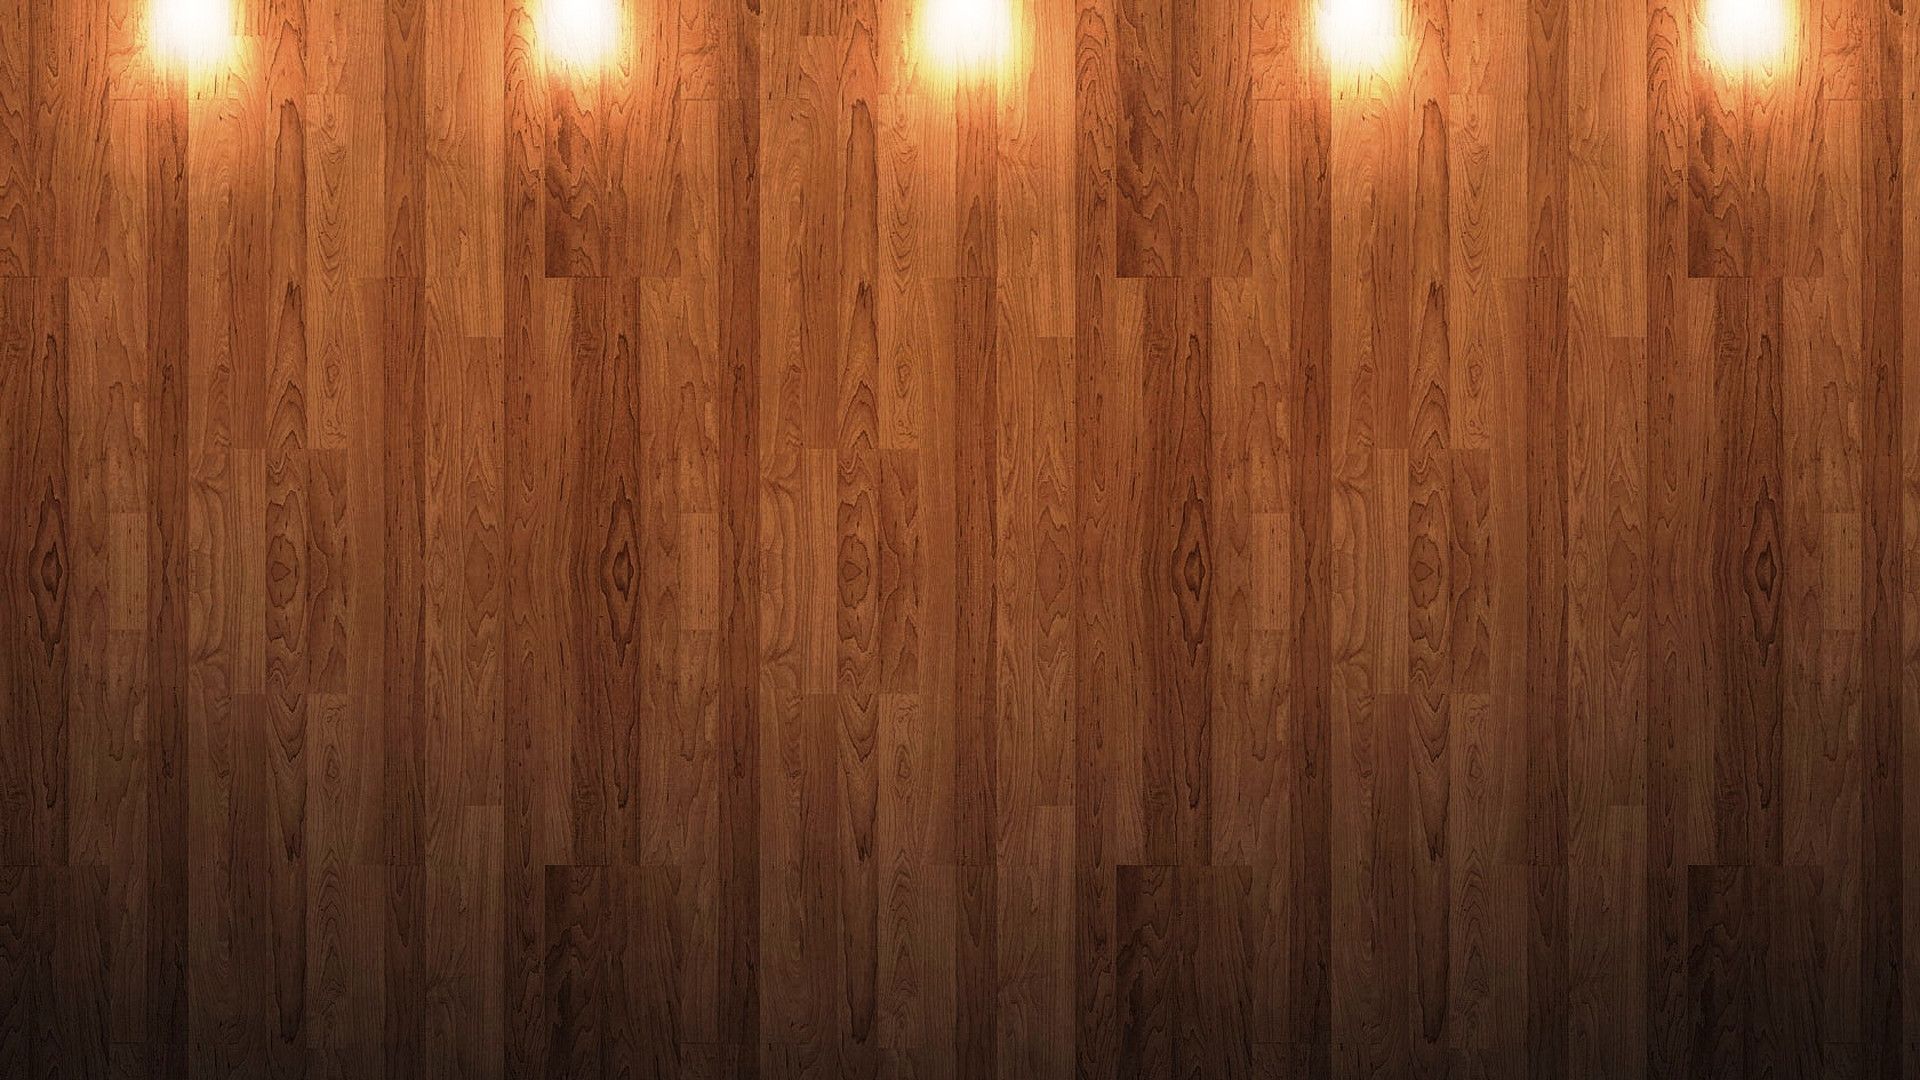 Hình nền mẫu gỗ: Xem xét lựa chọn hình nền mẫu gỗ để tạo nên không gian thưởng thức và tinh tế cho màn hình máy tính của bạn. Các mẫu gỗ đa dạng và độc đáo sẽ tạo nên sự khác biệt trong việc thiết lập phong cách mới cho màn hình của bạn.